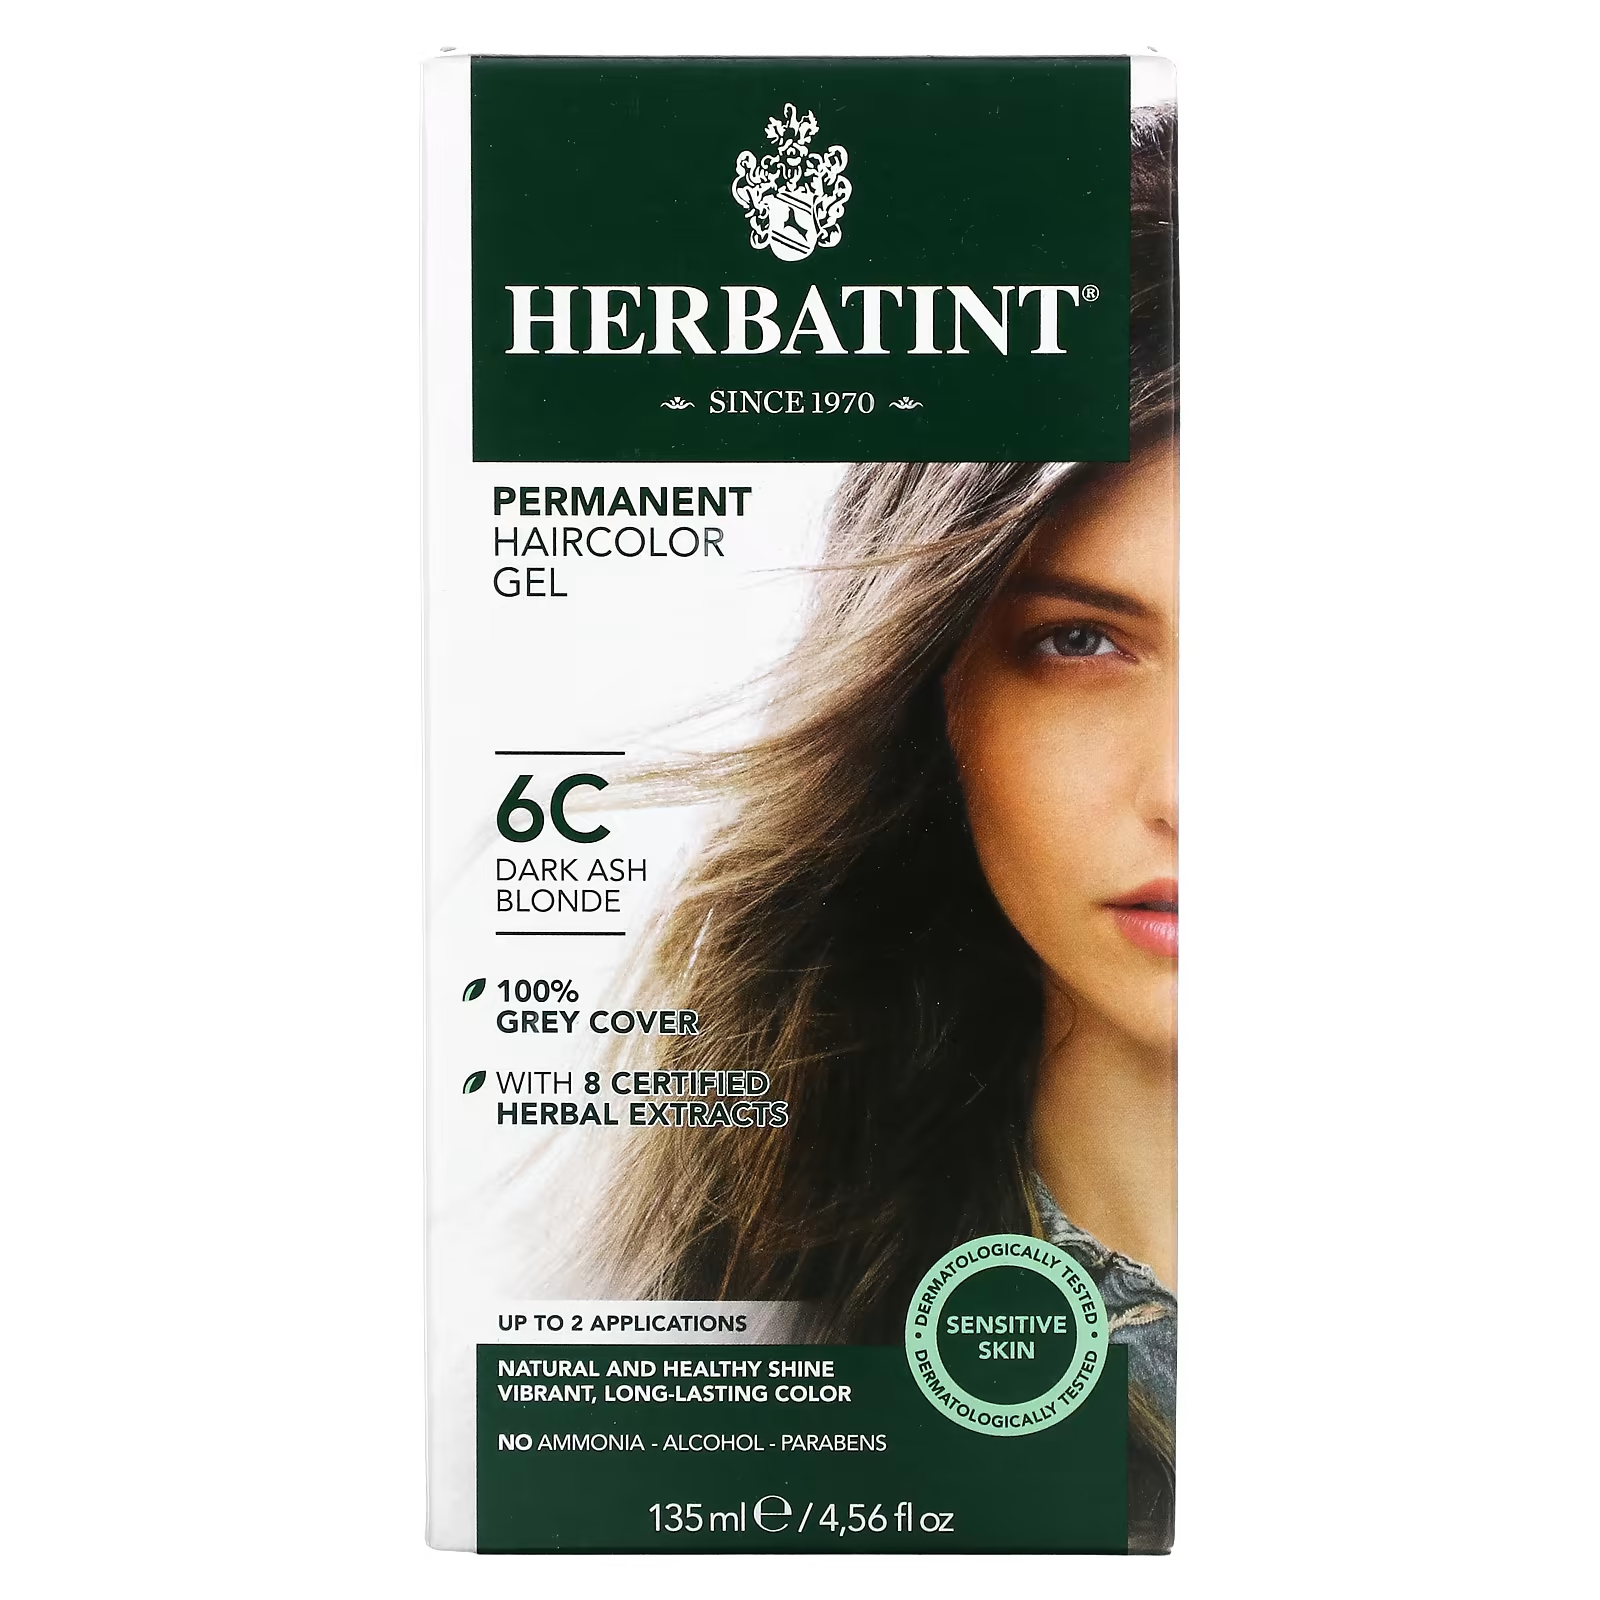 Перманентная гель-краска для волос Herbatint 6C темно-пепельный блондин, 135 мл herbatint стойкая гель краска для волос 6c темный пепельный блондин 135 мл 4 56 жидк унции